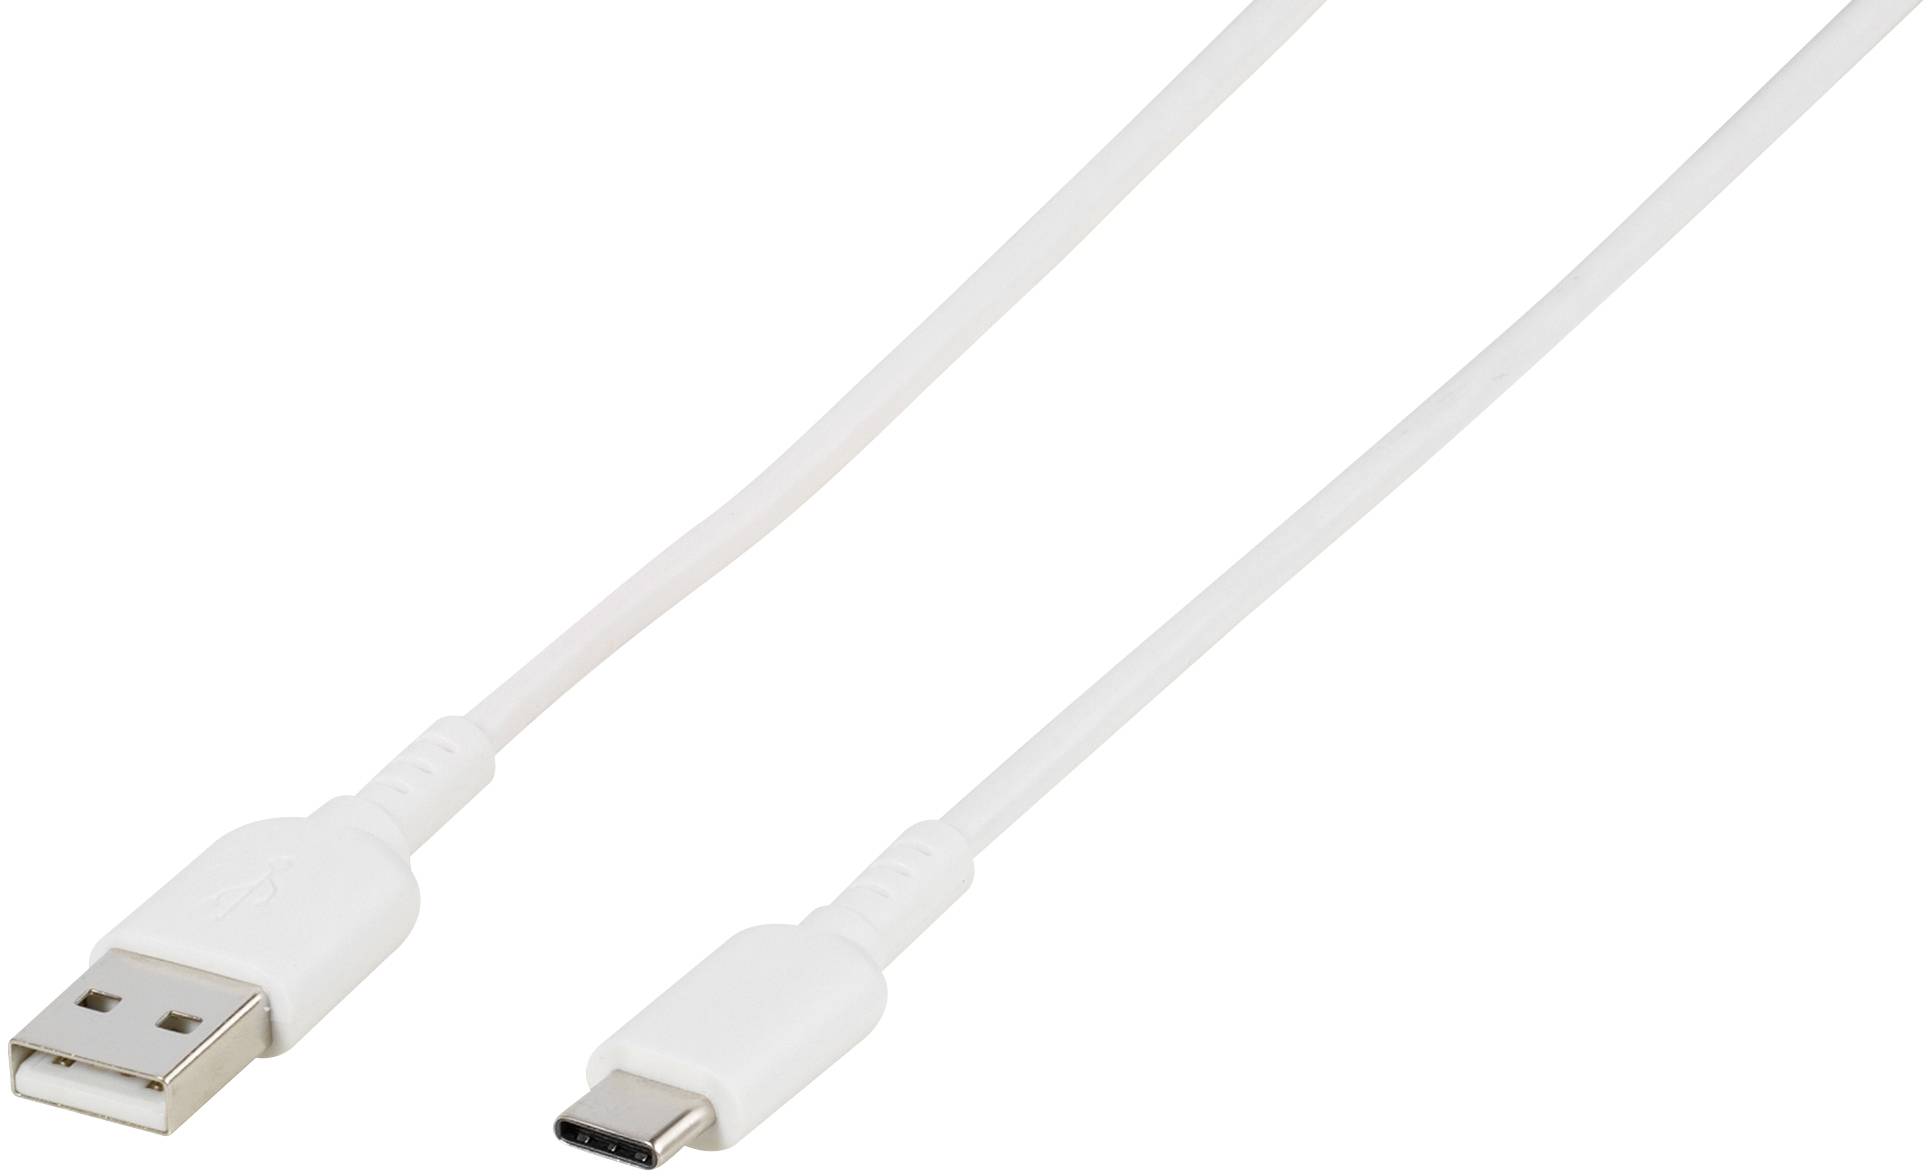 VIVANCO USB 2.0 Anschlusskabel [1x USB 2.0 Stecker C - 1x USB 2.0 Stecker A] 1.50 m Weiß Rund